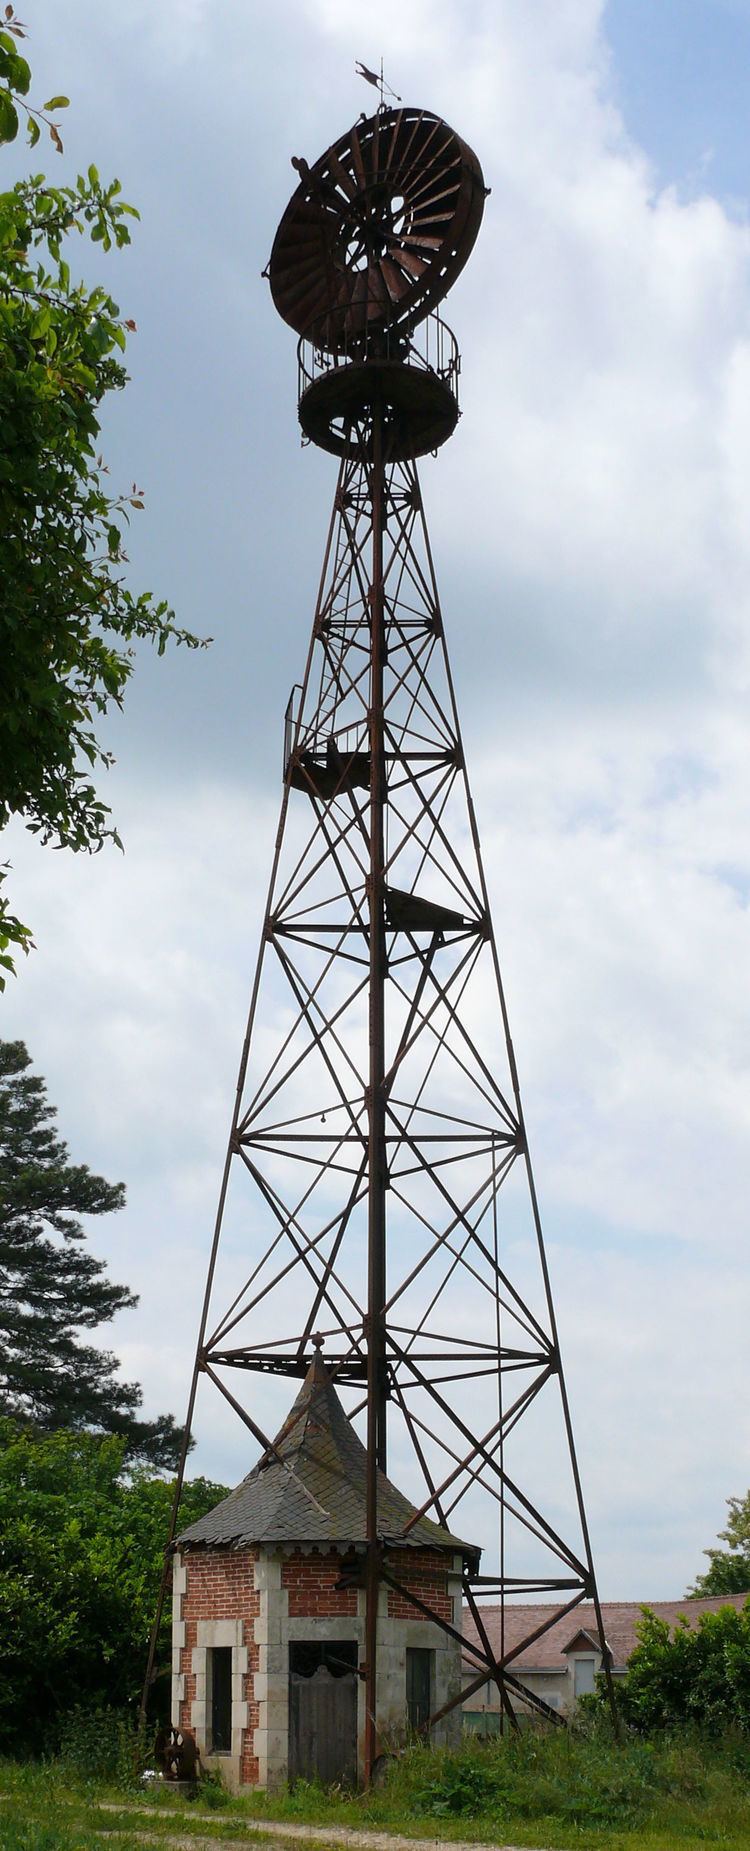 Éolienne Bollée Fileolienne Bolle de Paizay le Secjpg Wikimedia Commons